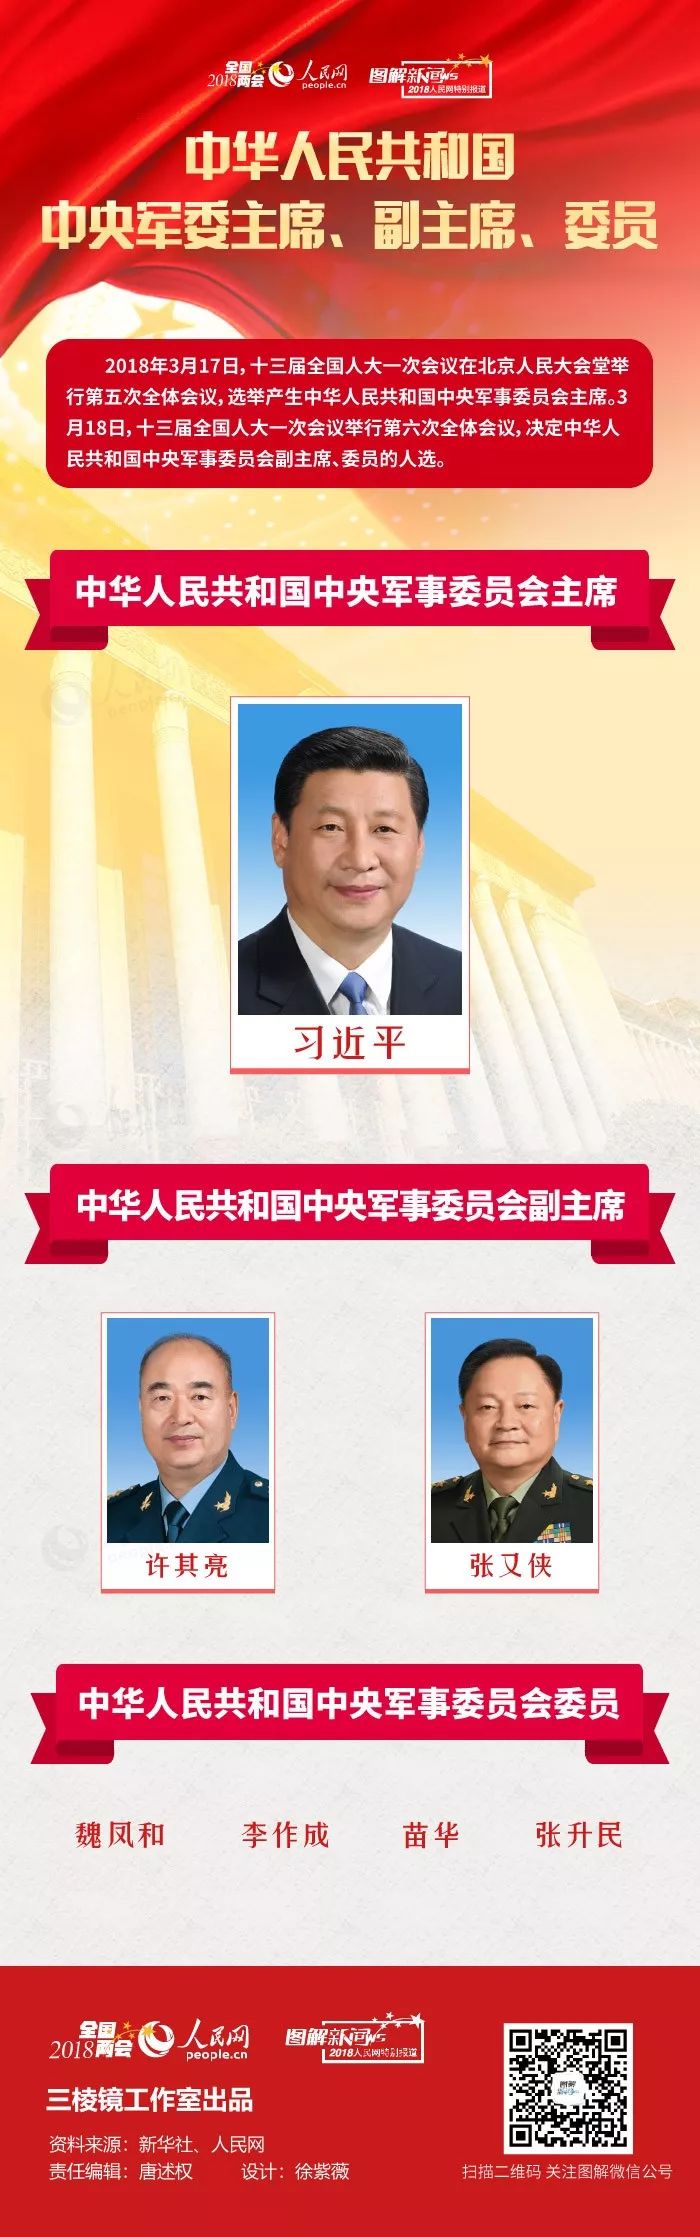 图解：中华人民共和国中央军委主席、副主席、委员